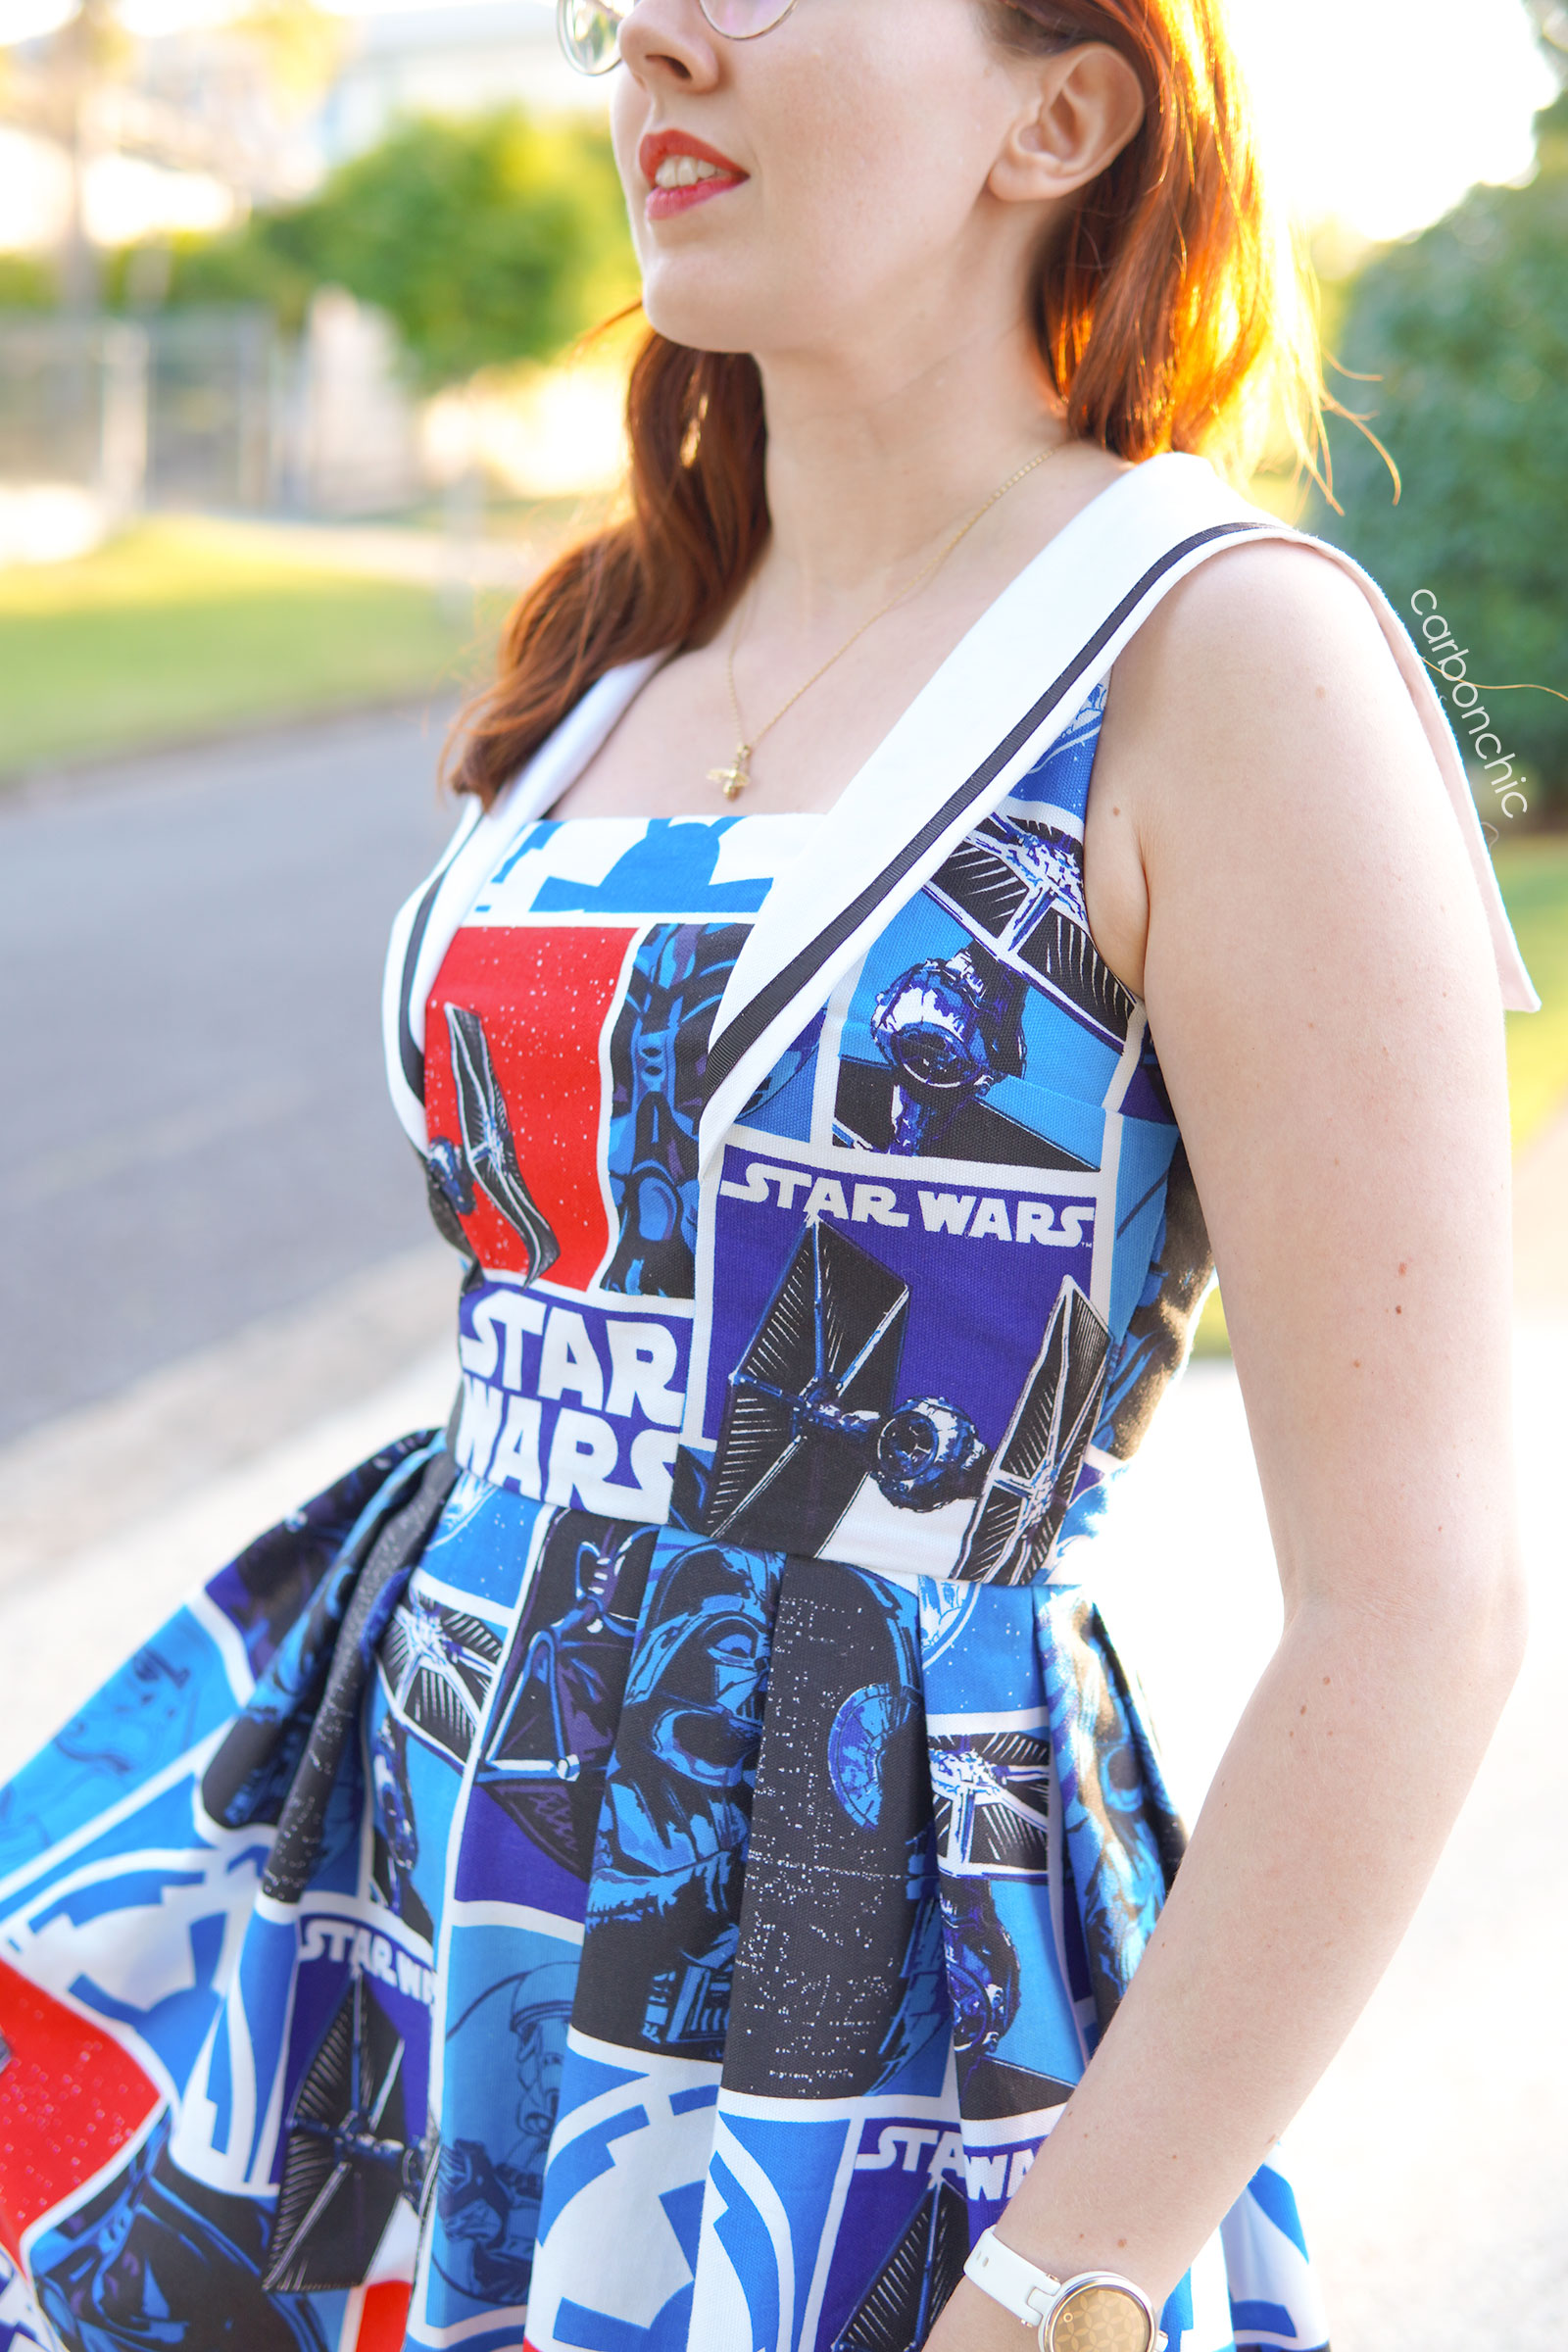 star wars dress